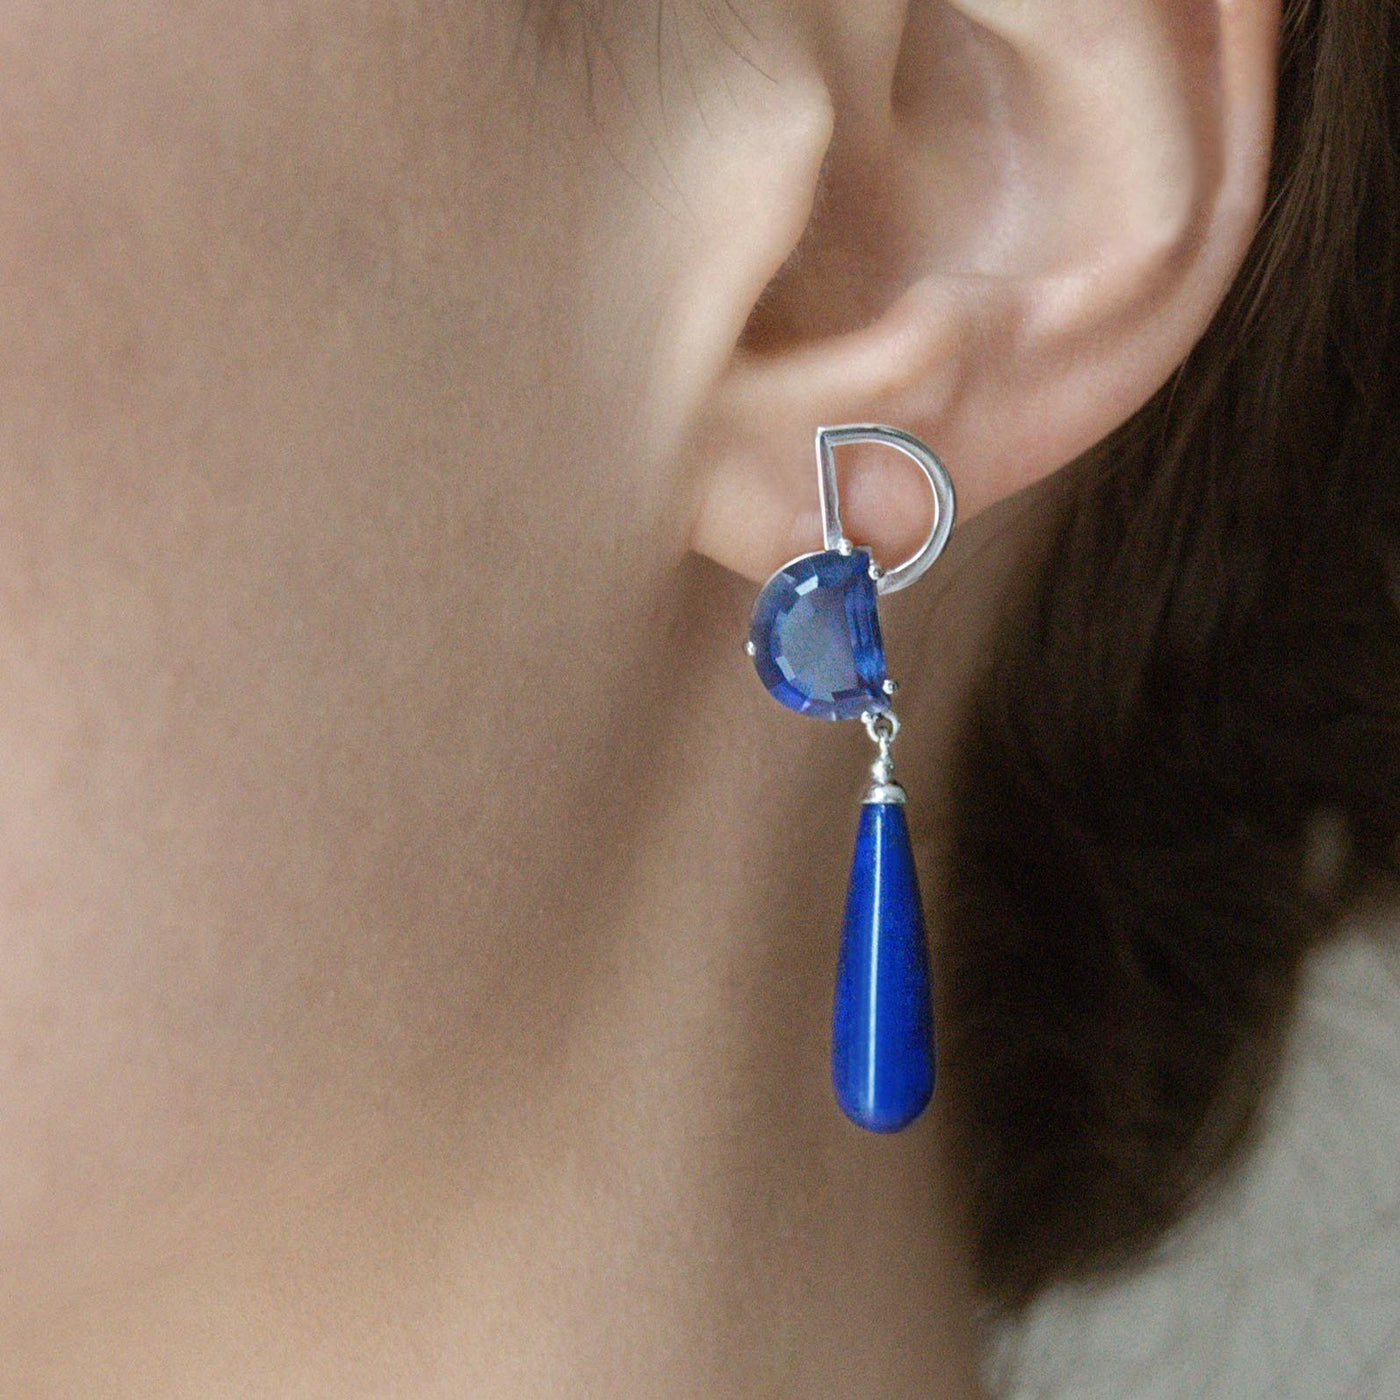 Dominique earrings